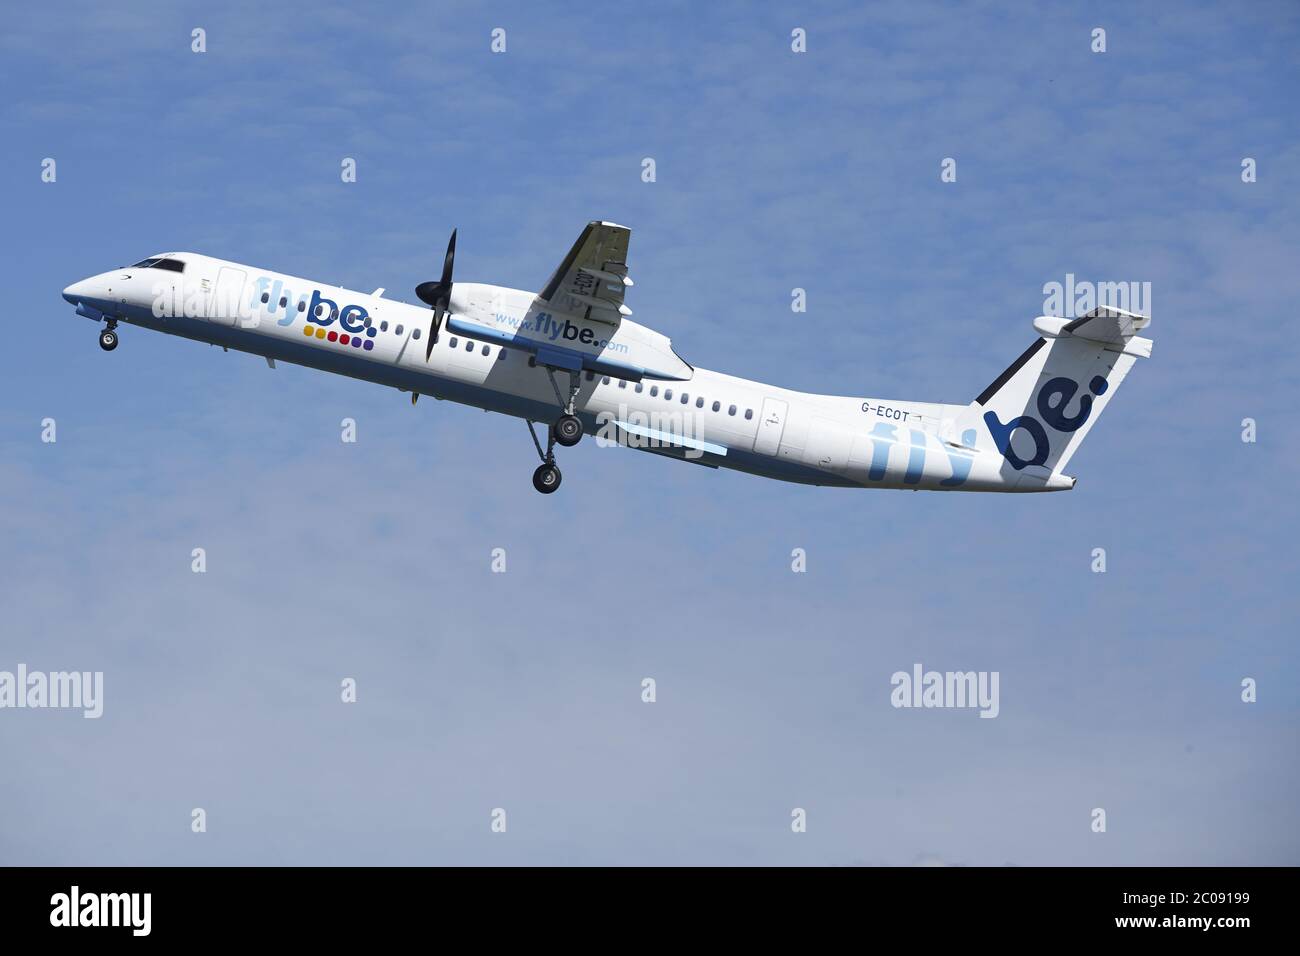 Aeroporto Schiphol di Amsterdam - Bombardier Dash 8 decollo da Flybe Foto Stock